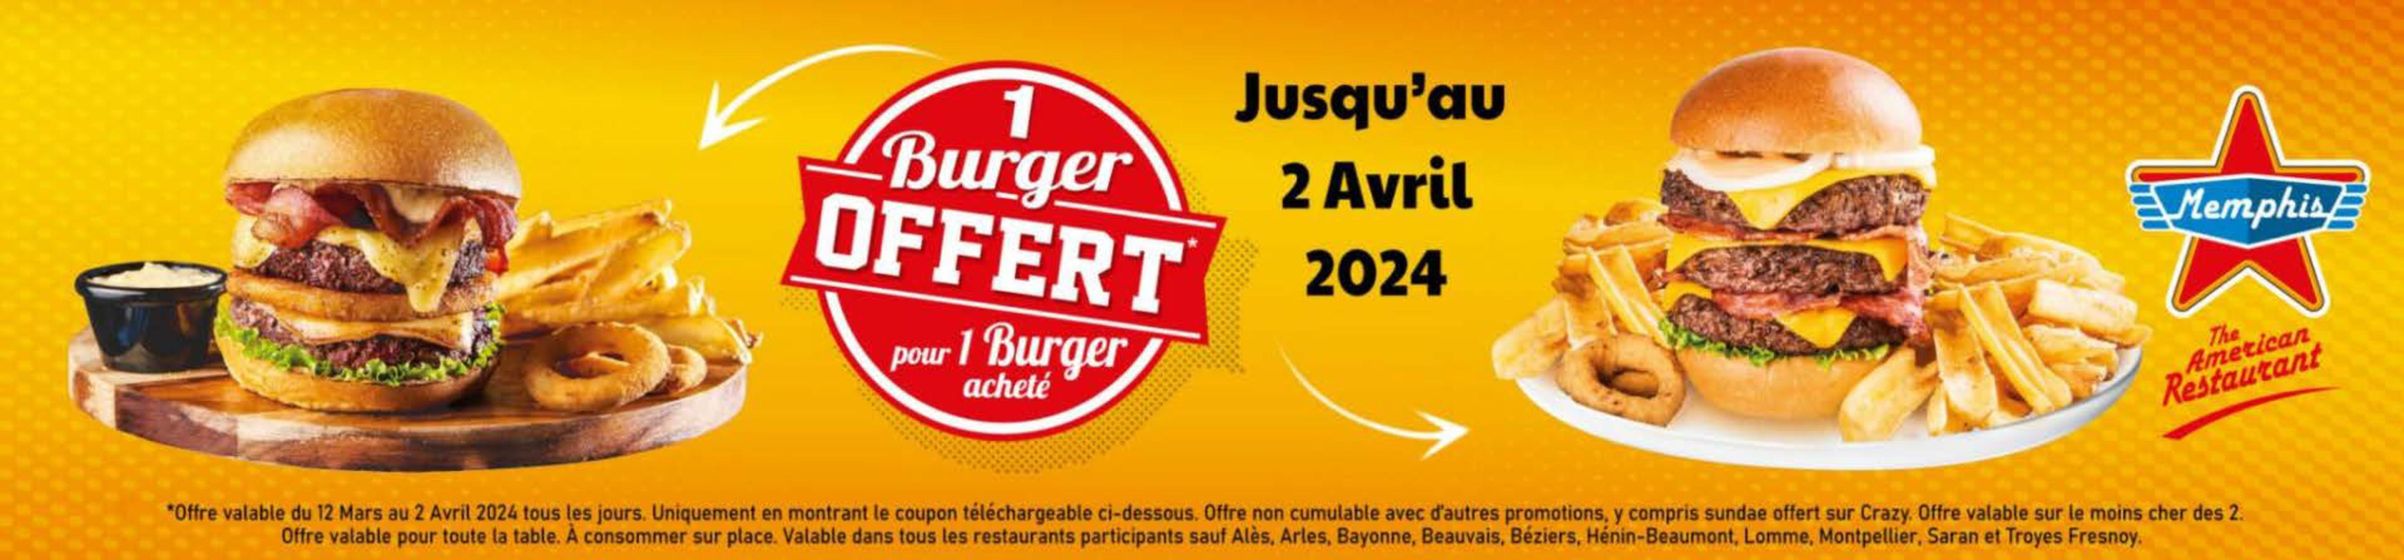 Catalogue Memphis Coffee à Paris | 1 Burger Offert Pour 1 Burger Acheté | 25/03/2024 - 02/04/2024